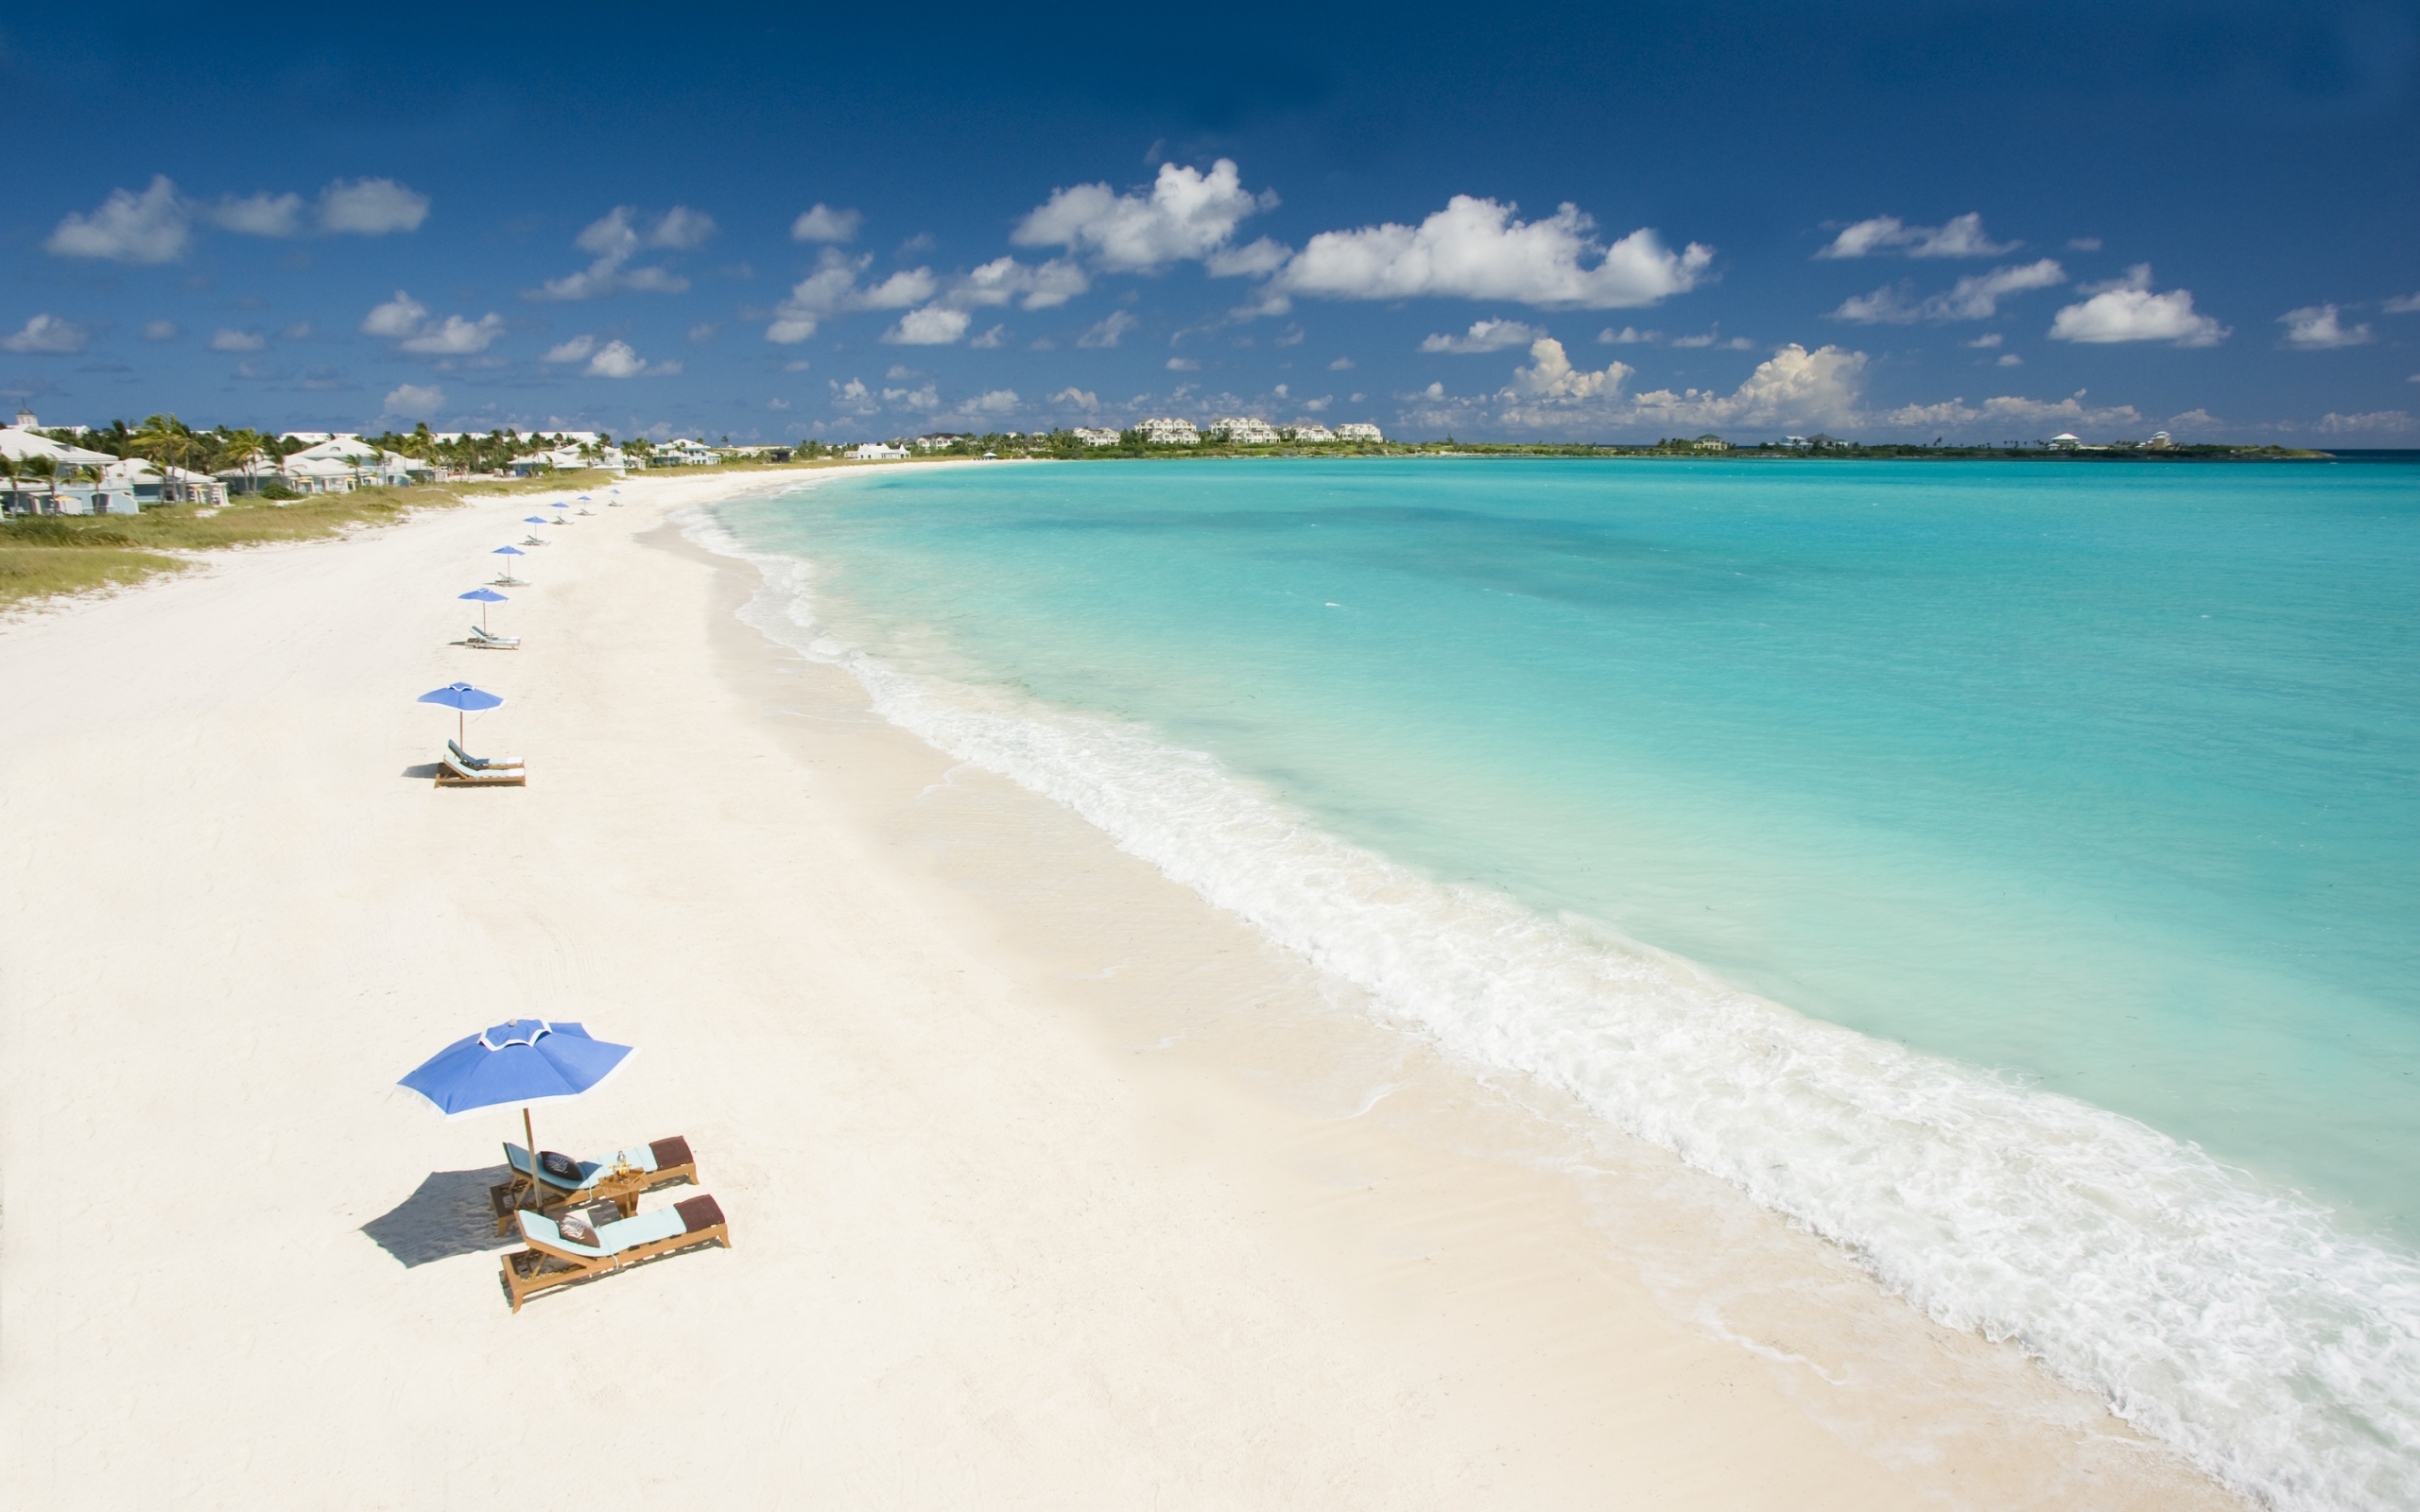 Caribbean Beach for 2560 x 1600 widescreen resolution